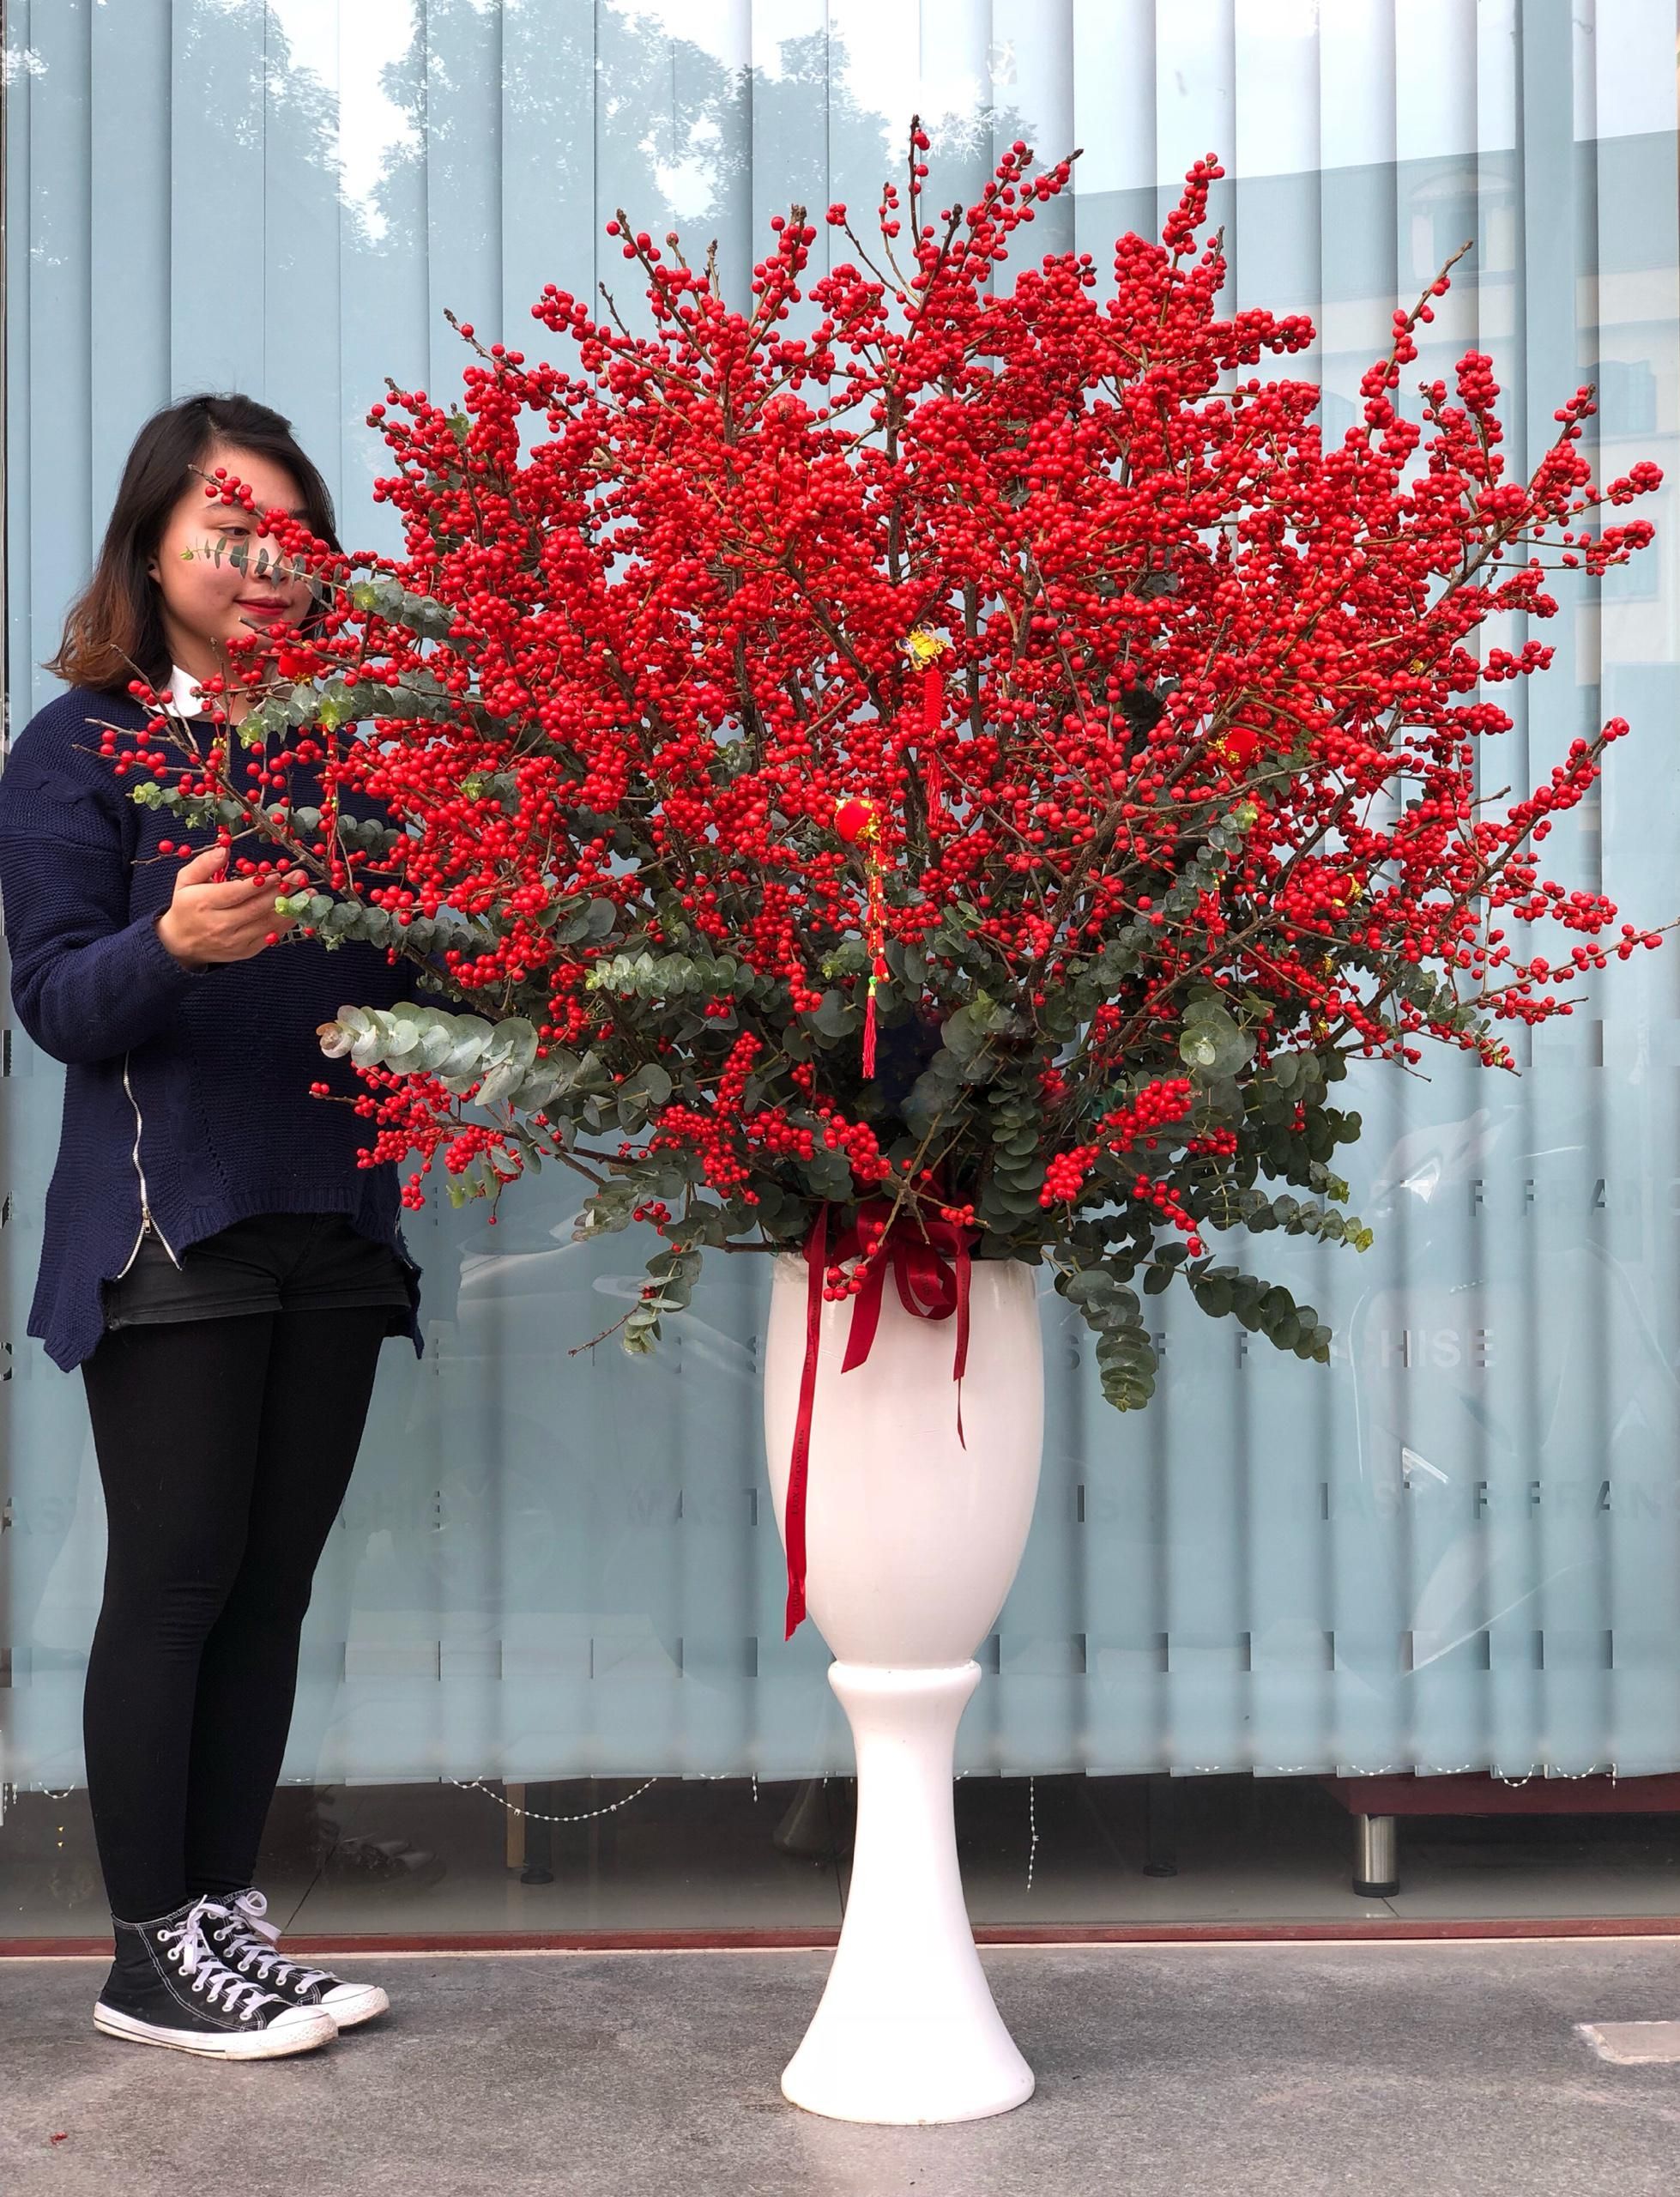 Bình hoa đào đông đỏ giá 21 triệu đồng 